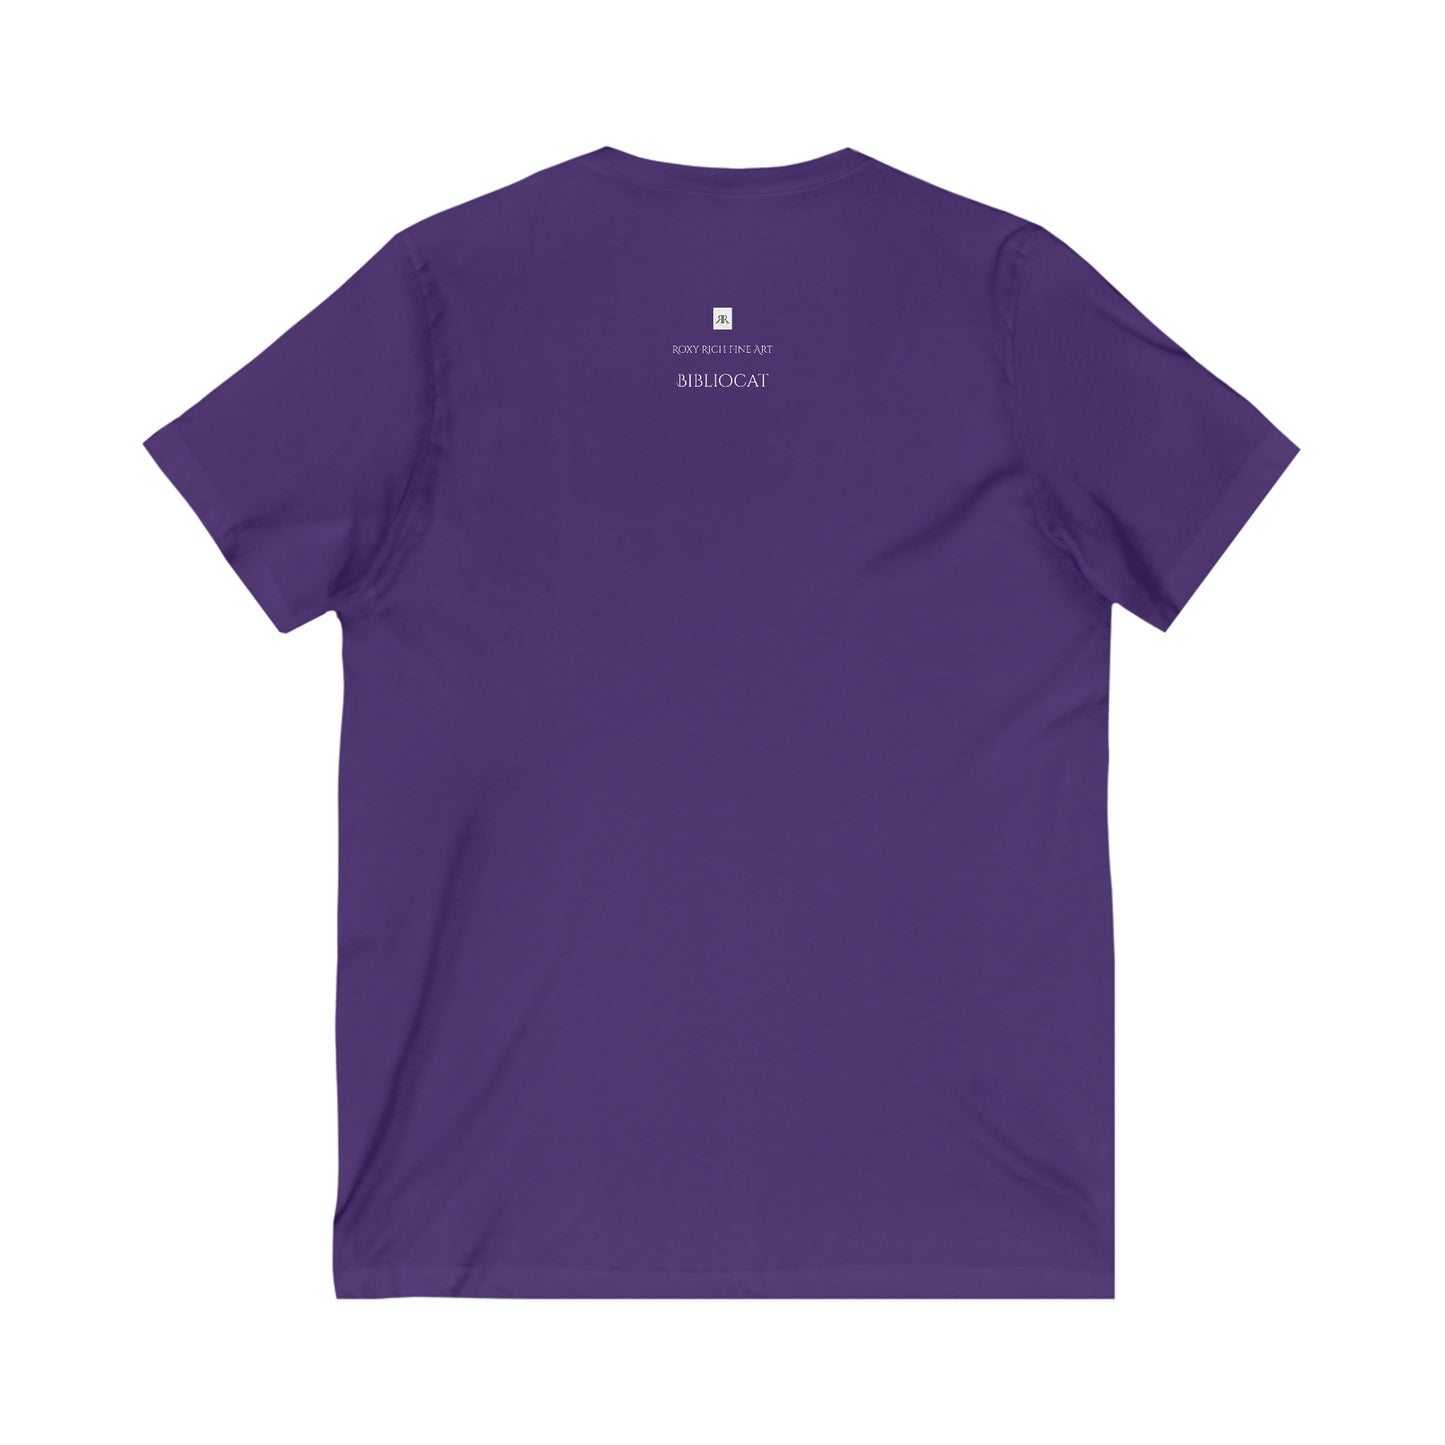 Bibliocat (en 6 colores)-Camiseta unisex de manga corta con cuello en V